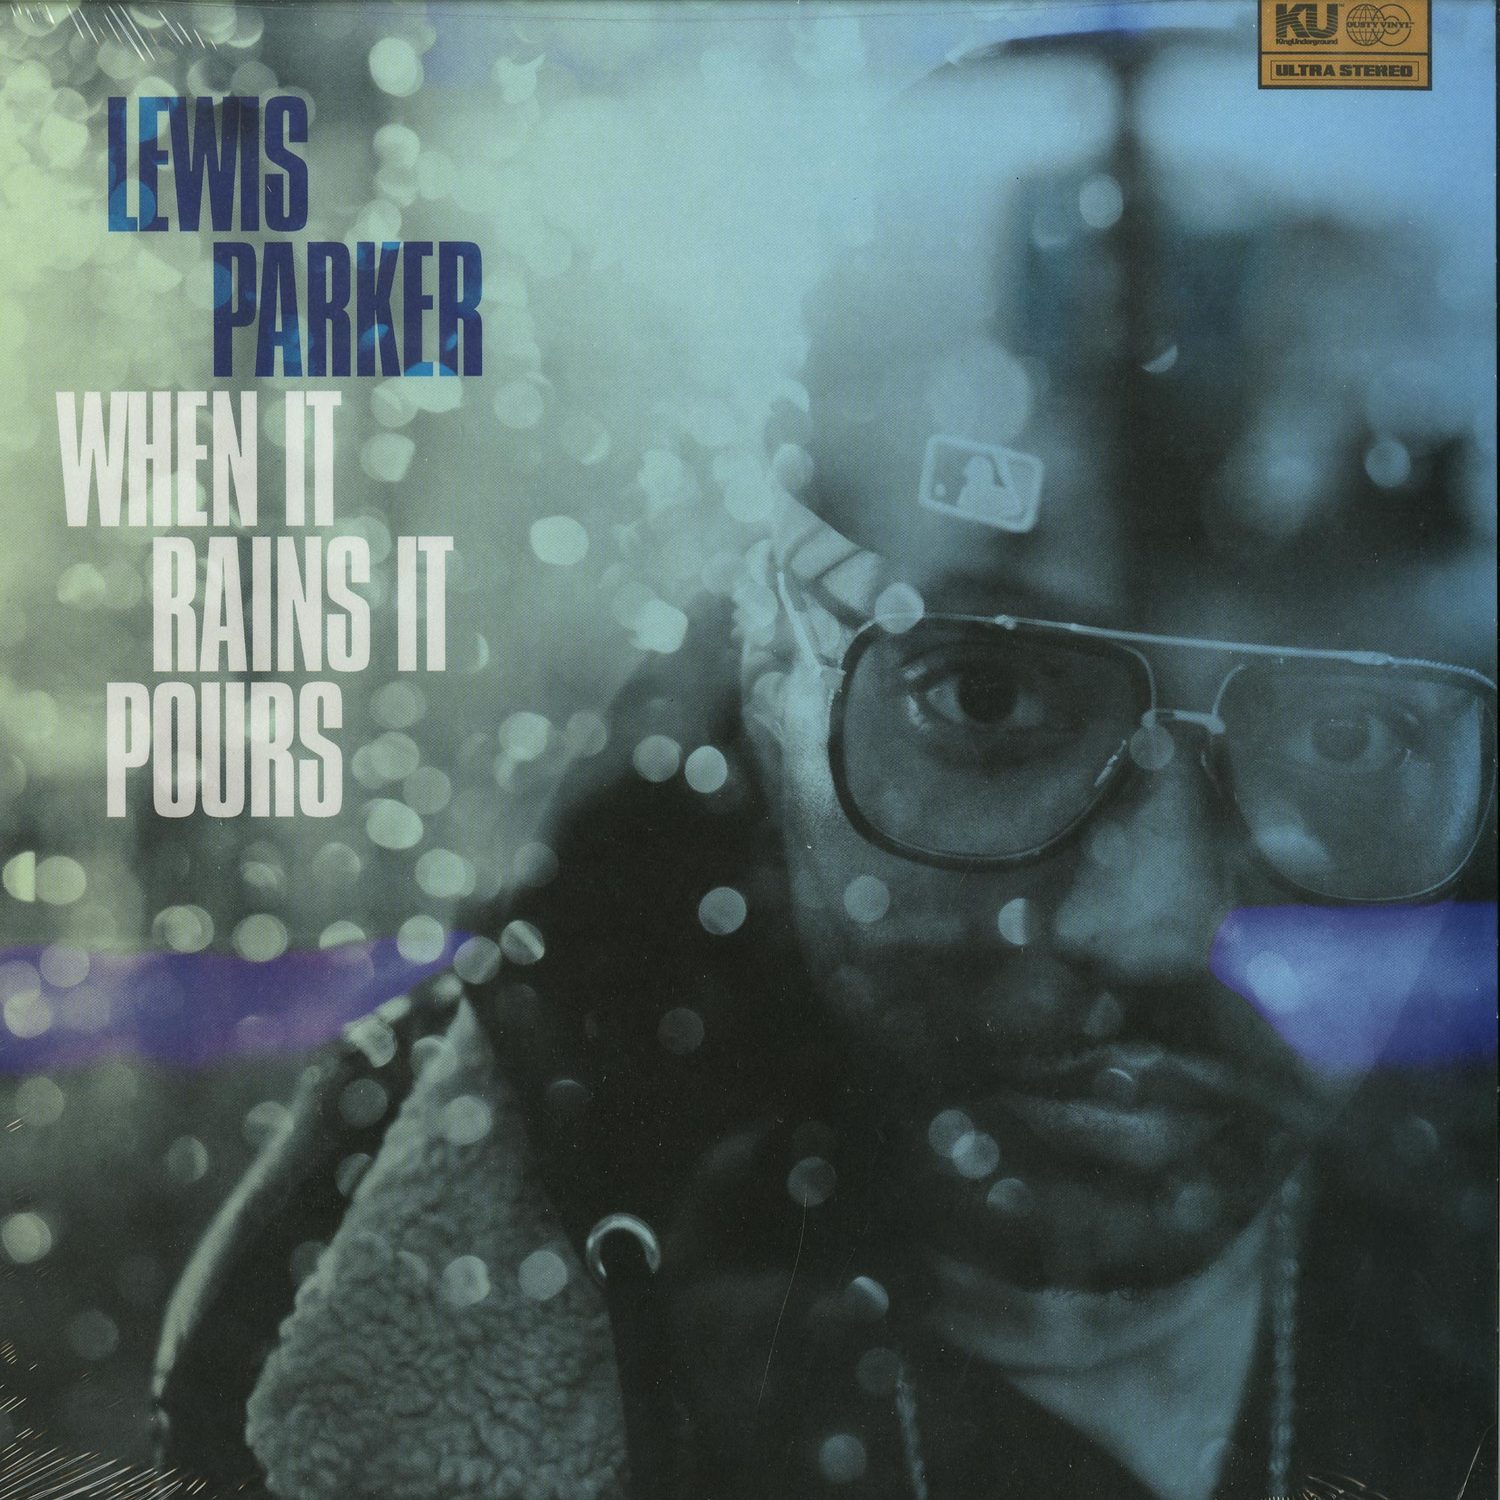 Lewis Parker - WHEN IT RAINS IT POURS 